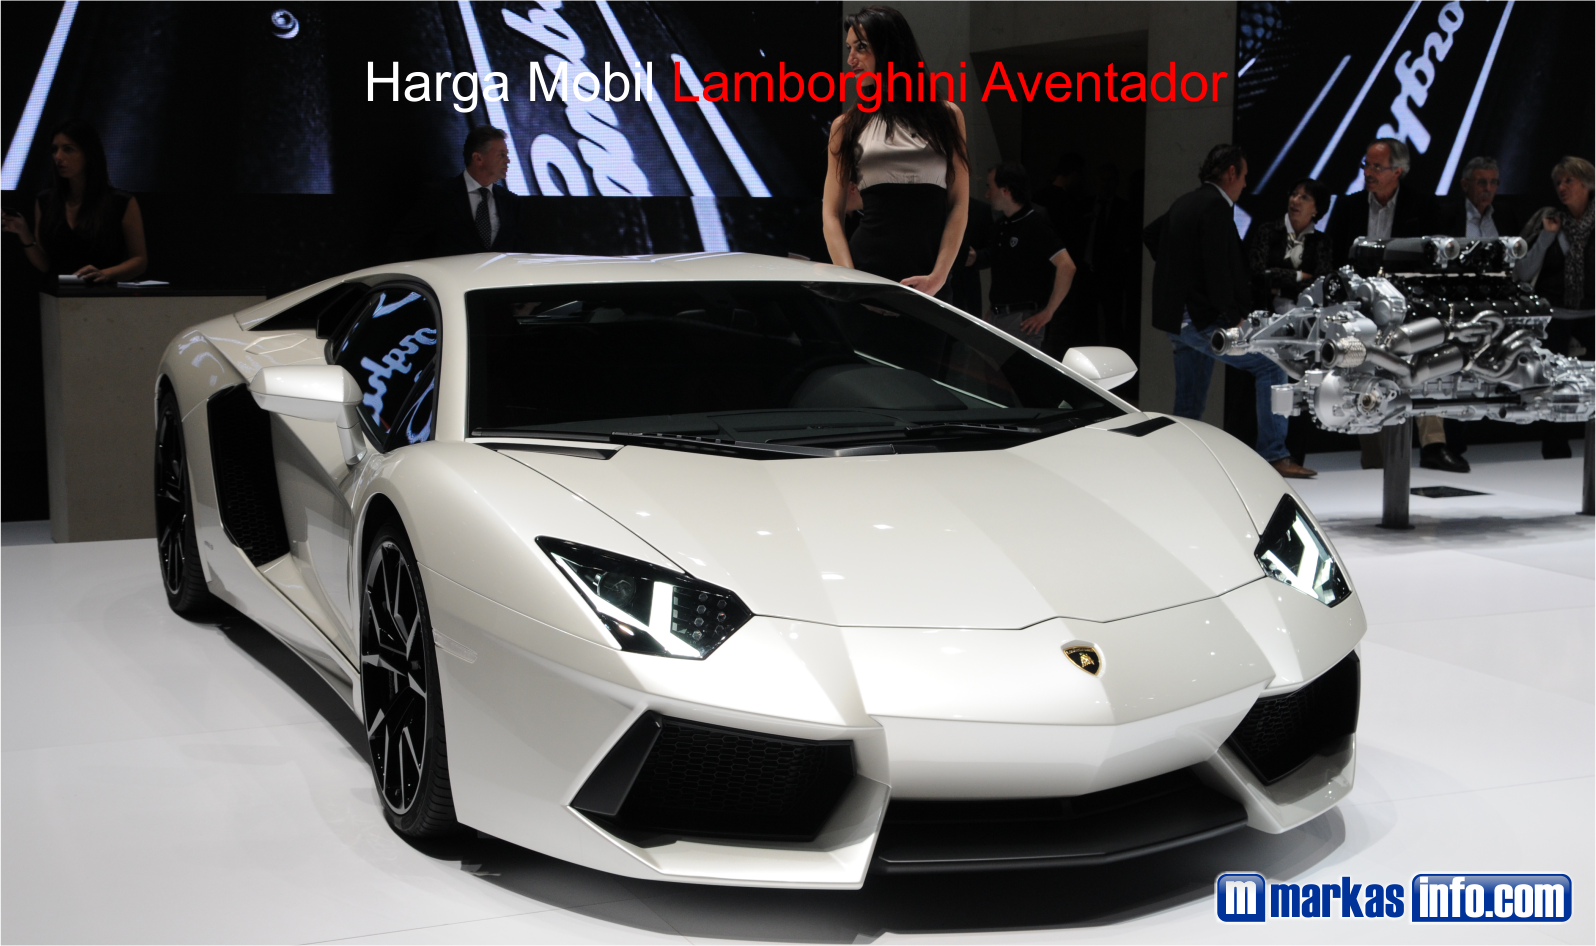 Harga Mobil Lamborghini Aventador Terbaru 2021